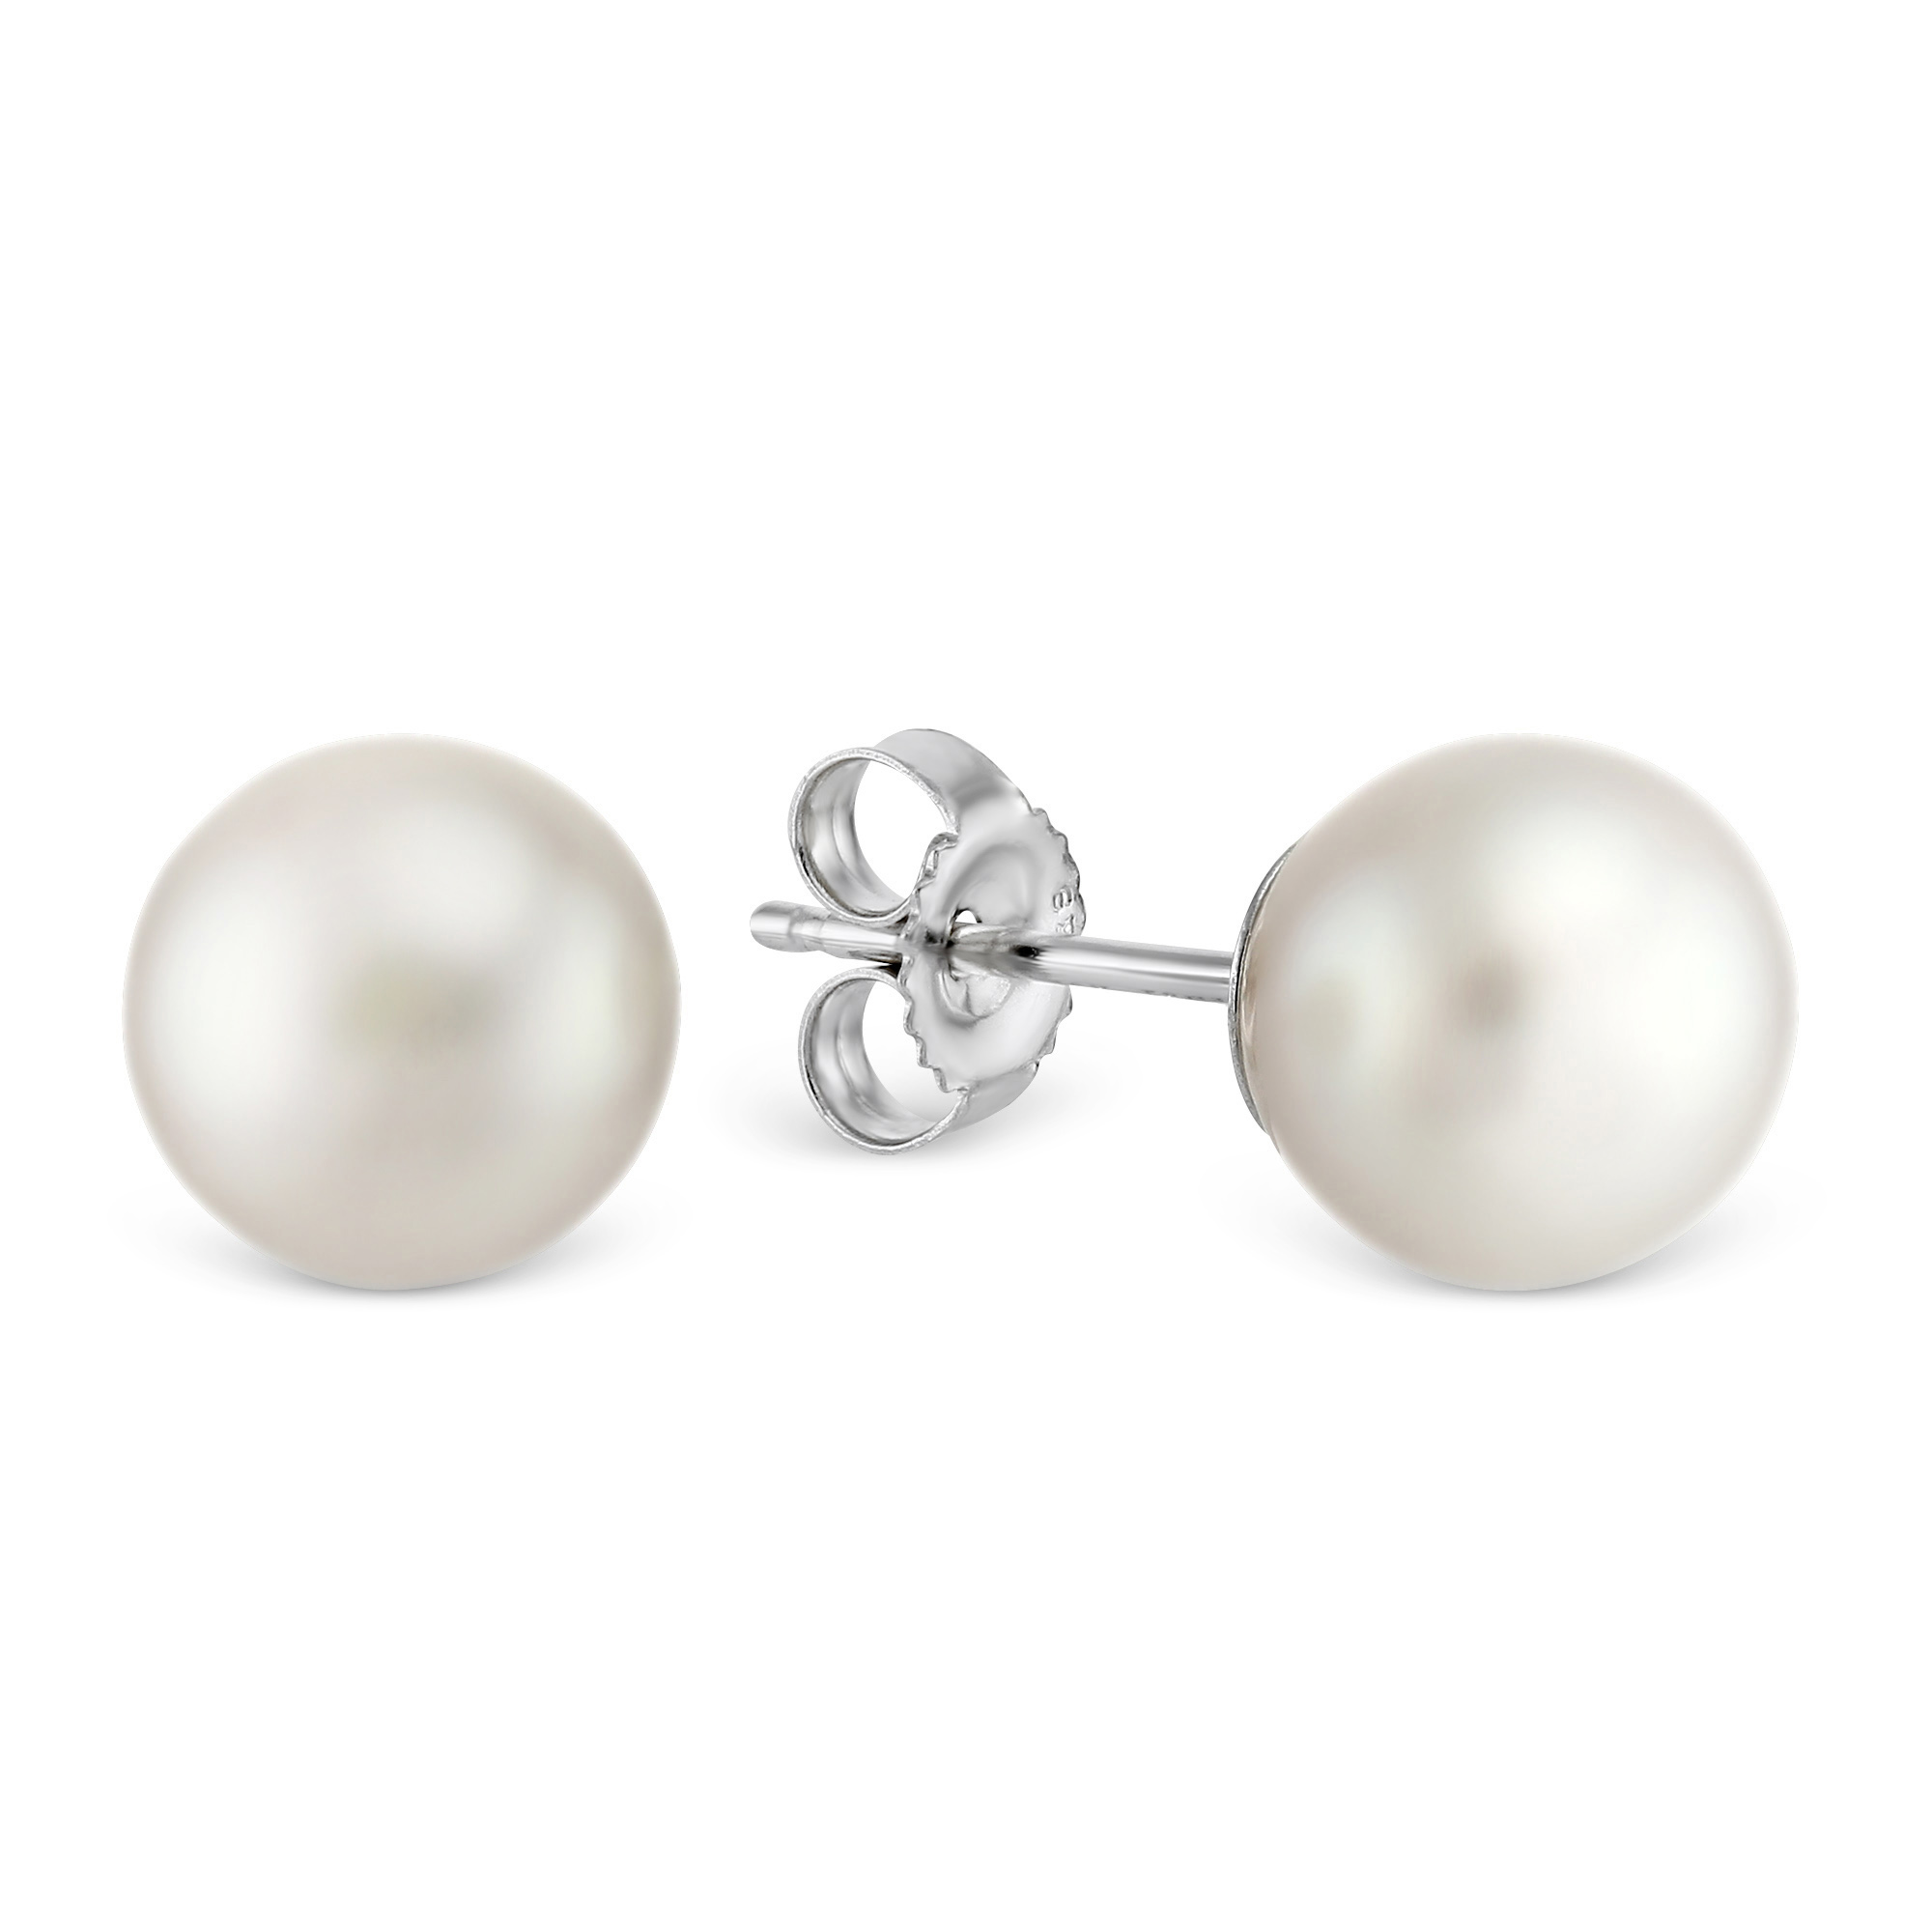 TARA Pearls 14K White Gold White Cultured Pearl Stud Earrings, 5mm